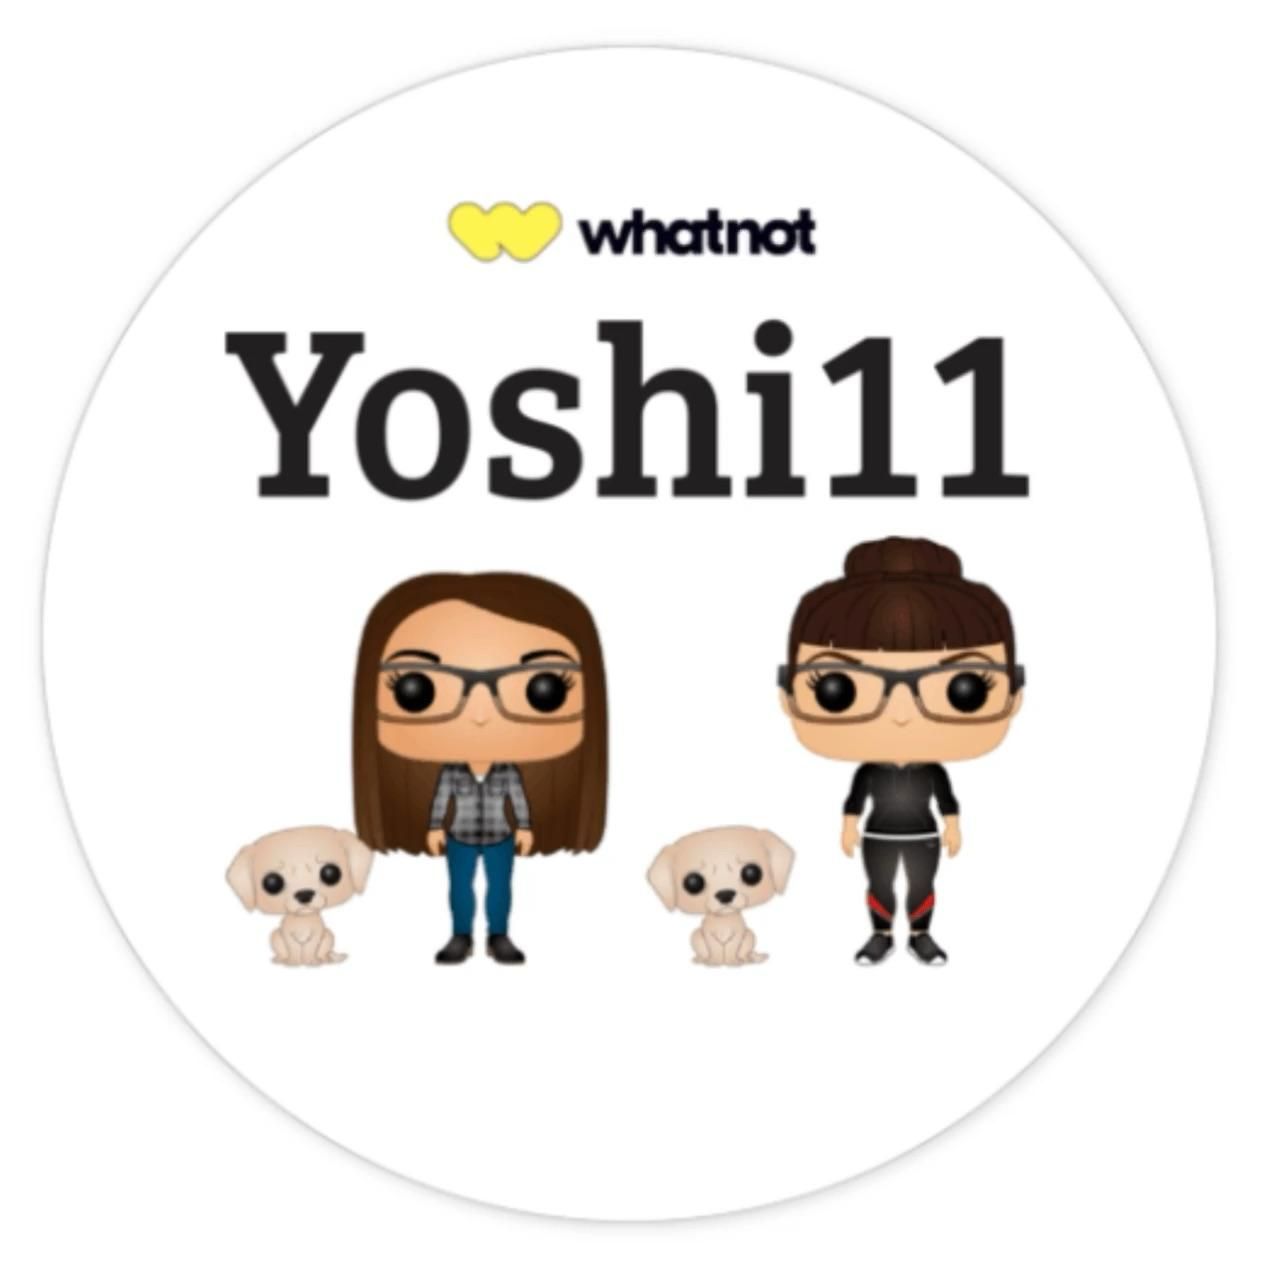 yoshi11